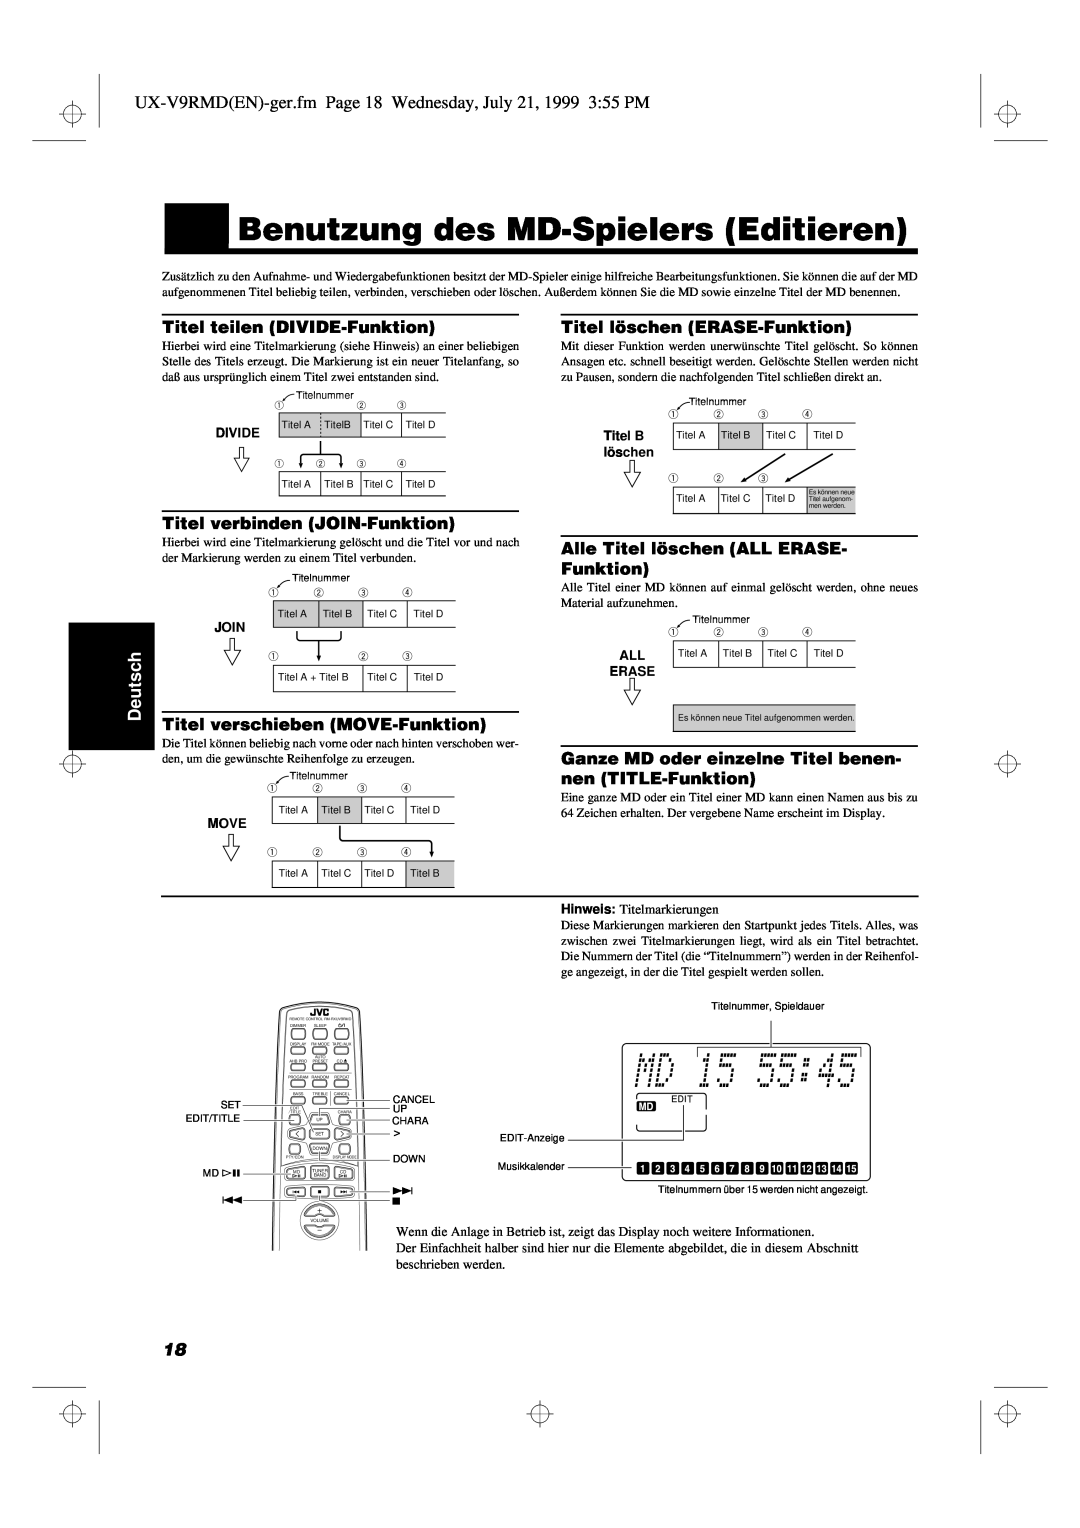 JVC UX-V9RMD manual Titel teilen DIVIDE-Funktion, Titel verbinden JOIN-Funktion, Titel verschieben MOVE-Funktion, Deutsch 